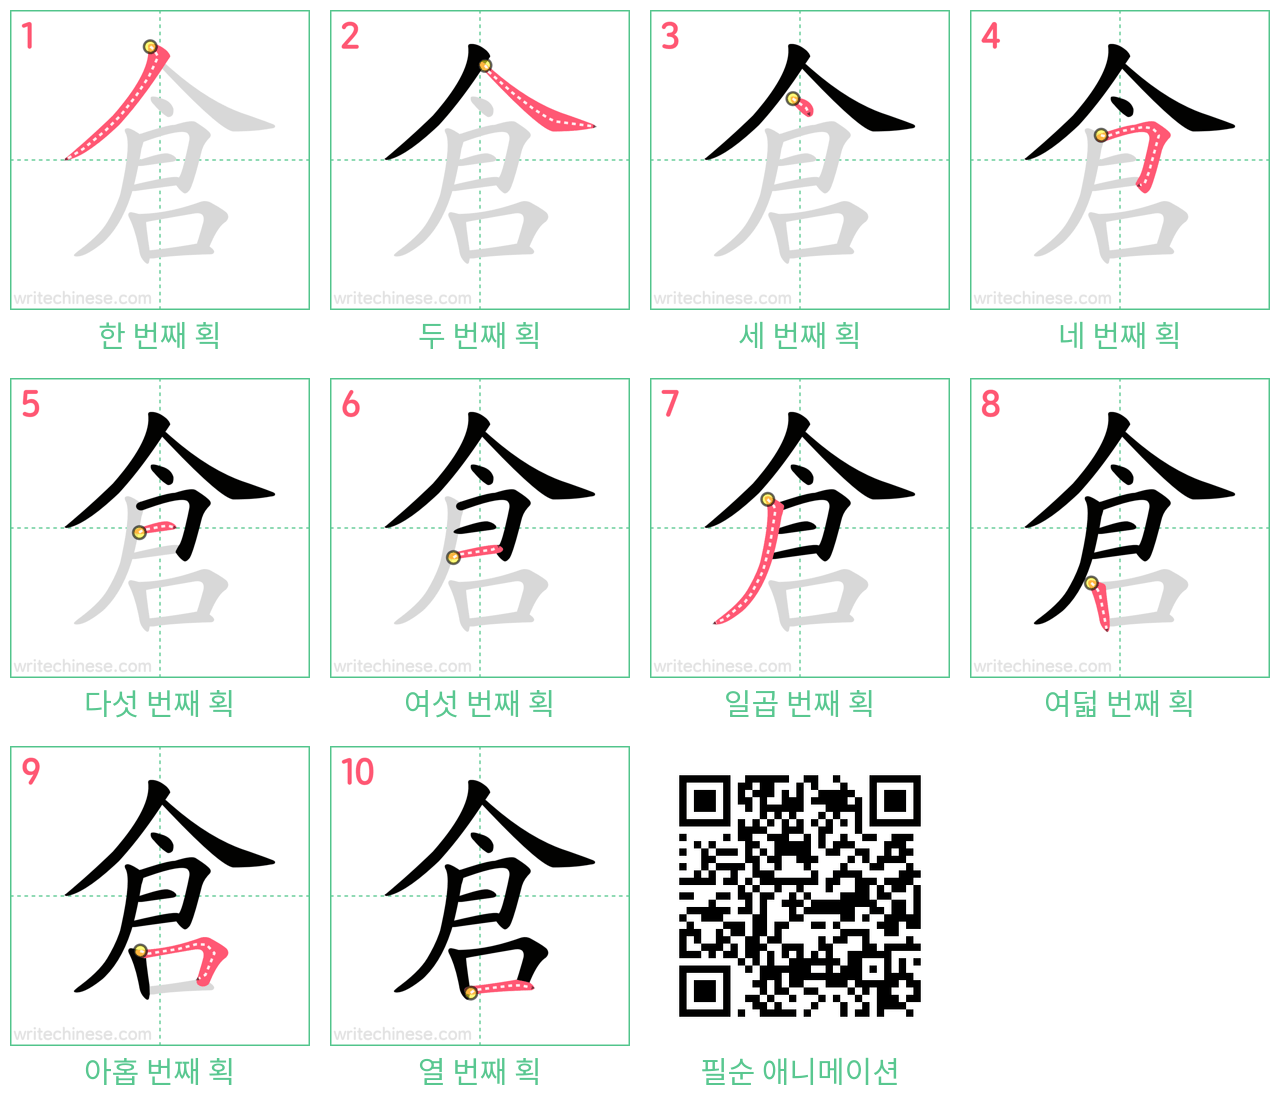 倉 step-by-step stroke order diagrams